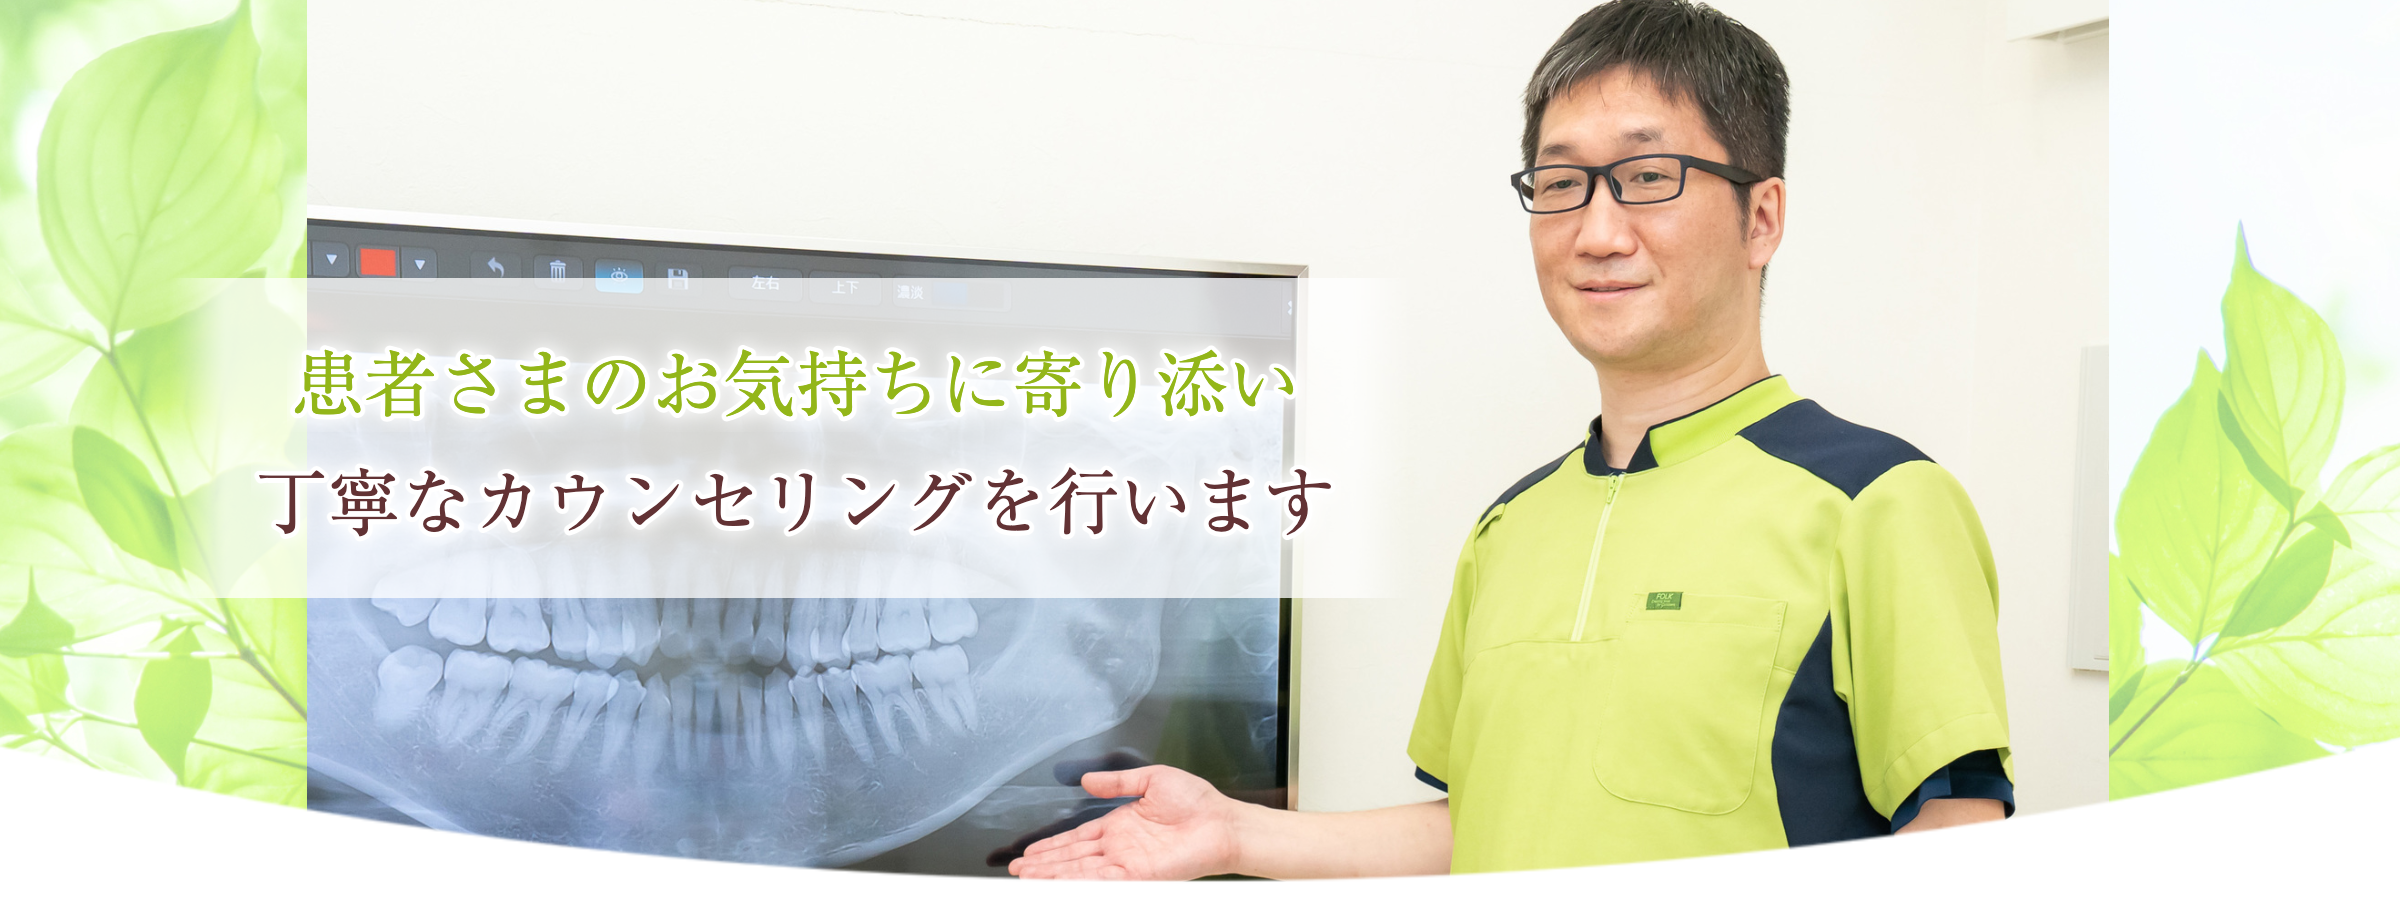 墨田区鐘ヶ淵の歯医者カルミアデンタルクリニック丁寧なカウンセリングを行います